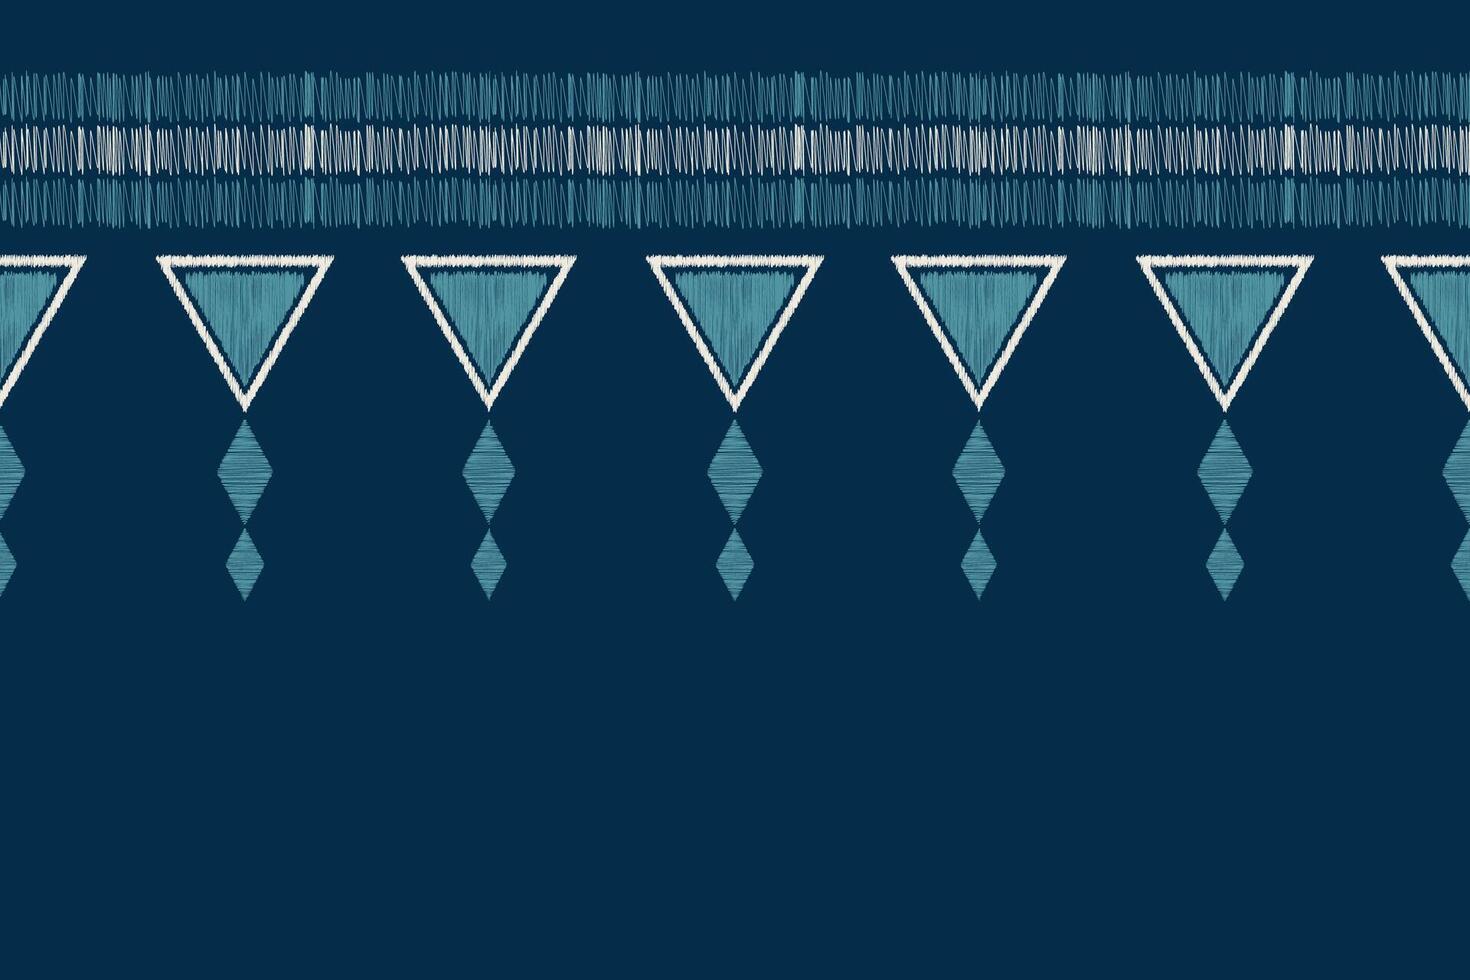 traditionnel ethnique ikat motif en tissu modèle géométrique style.africain ikat broderie ethnique Oriental modèle bleu Contexte fond d'écran. abstrait, illustration.texture, cadre, décoration. vecteur